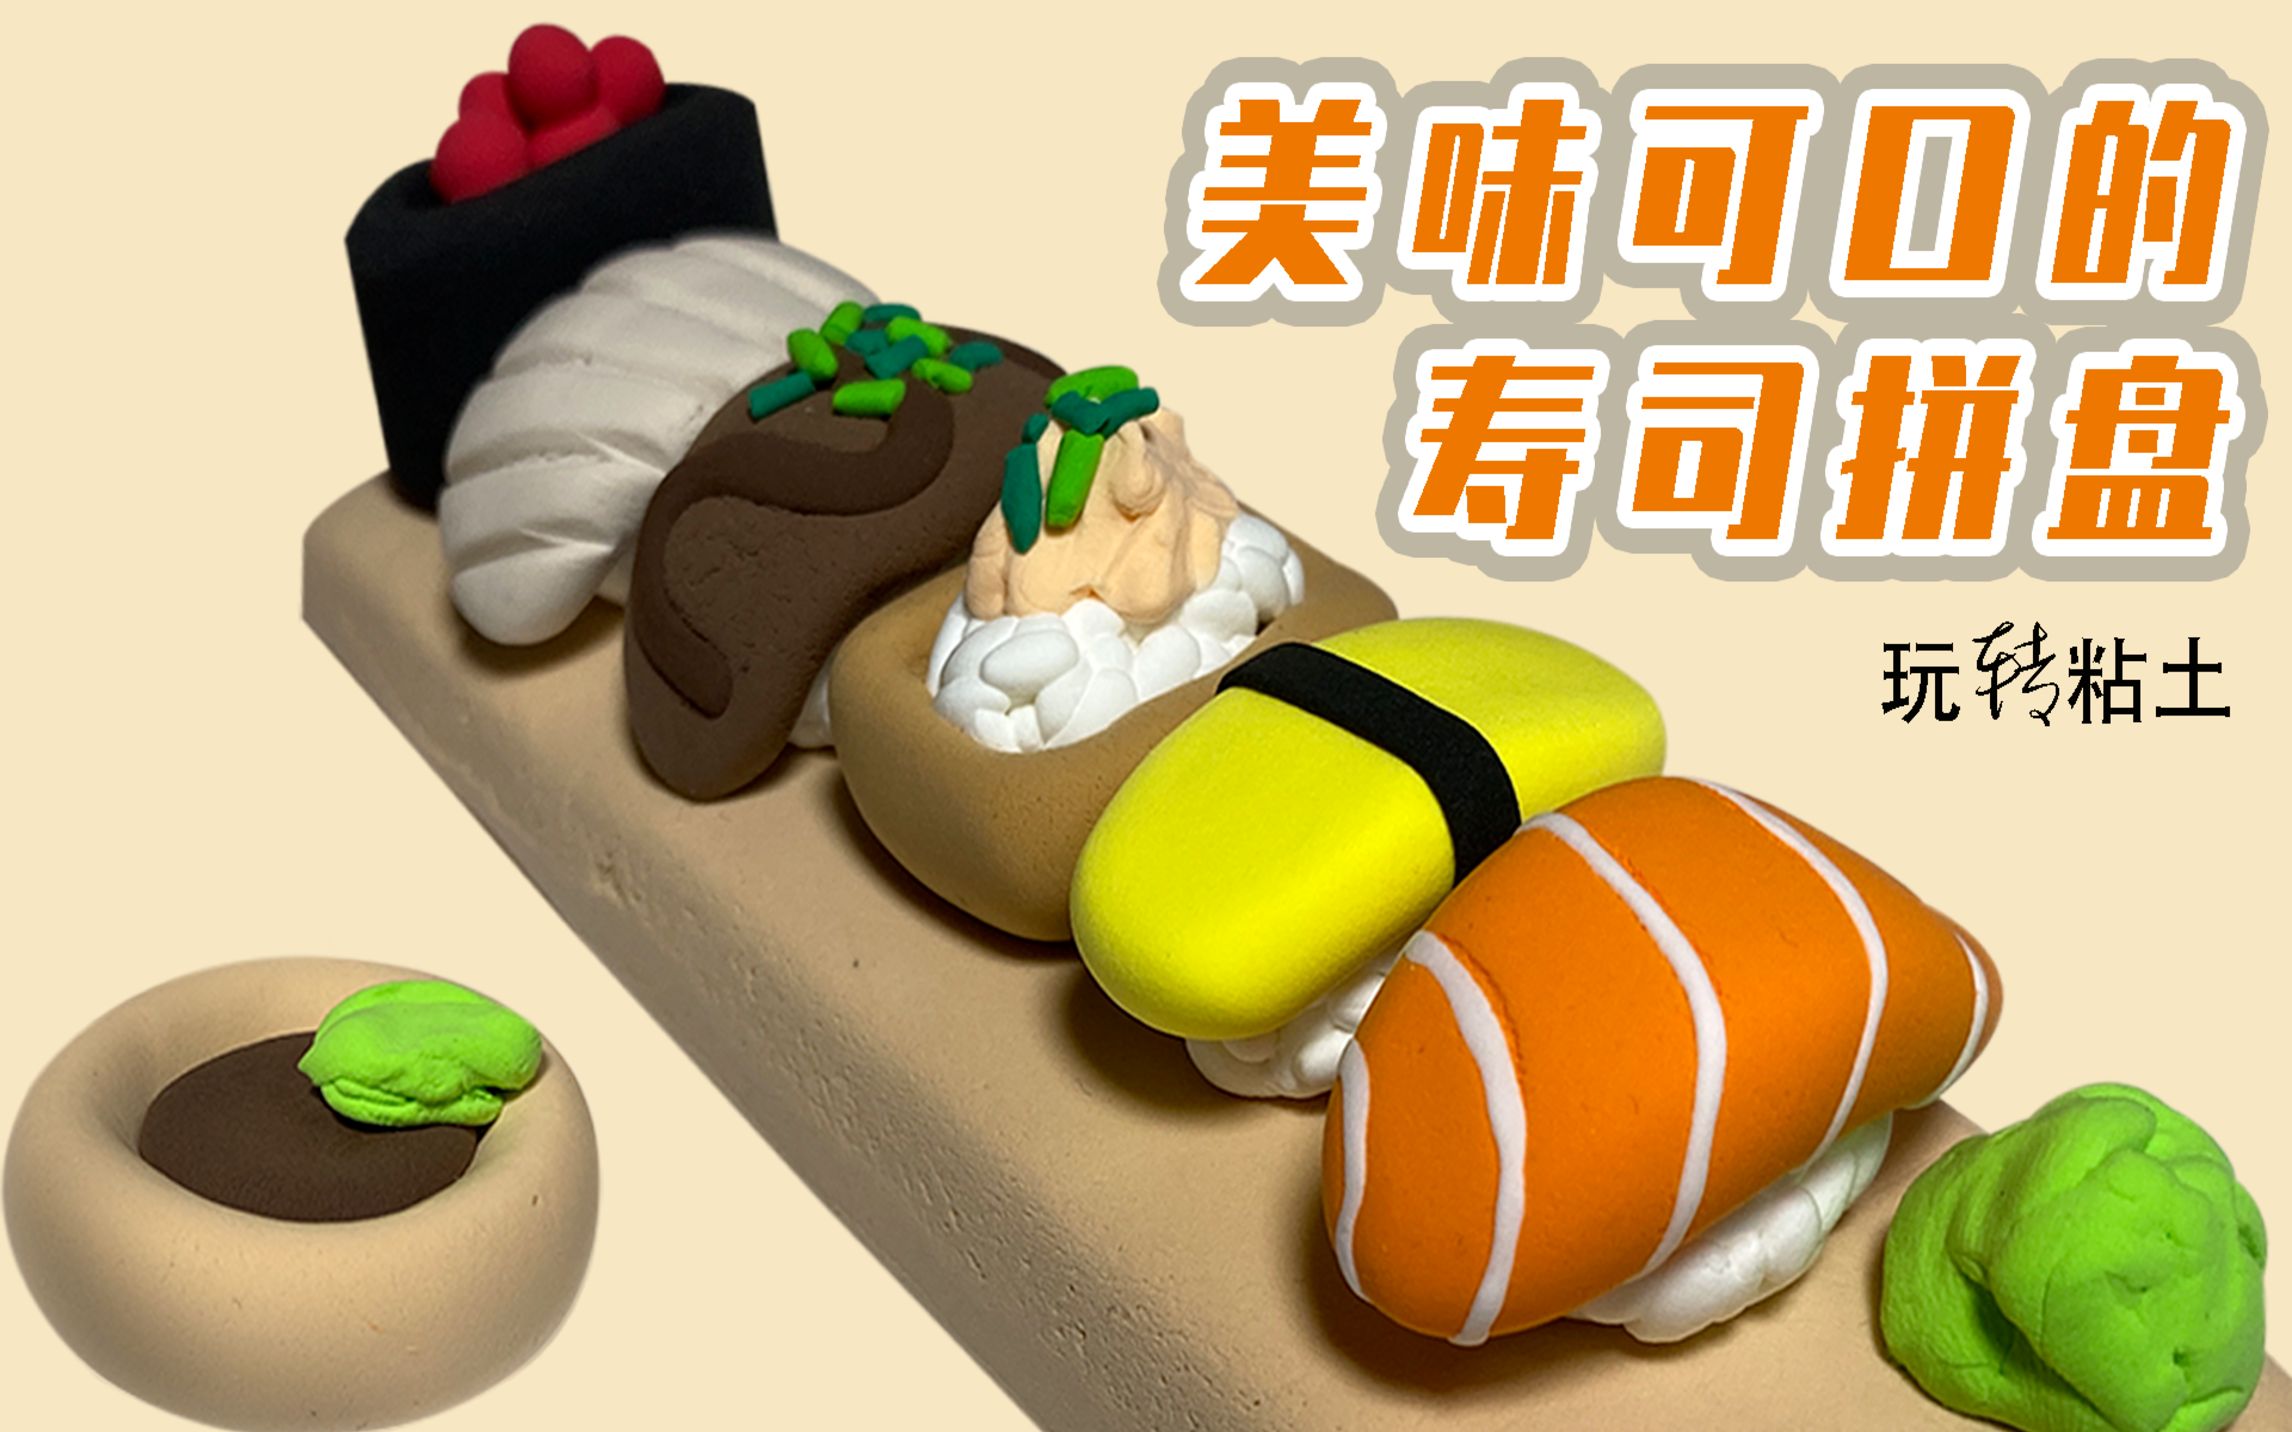 用粘土做出一盘美味可口的寿司